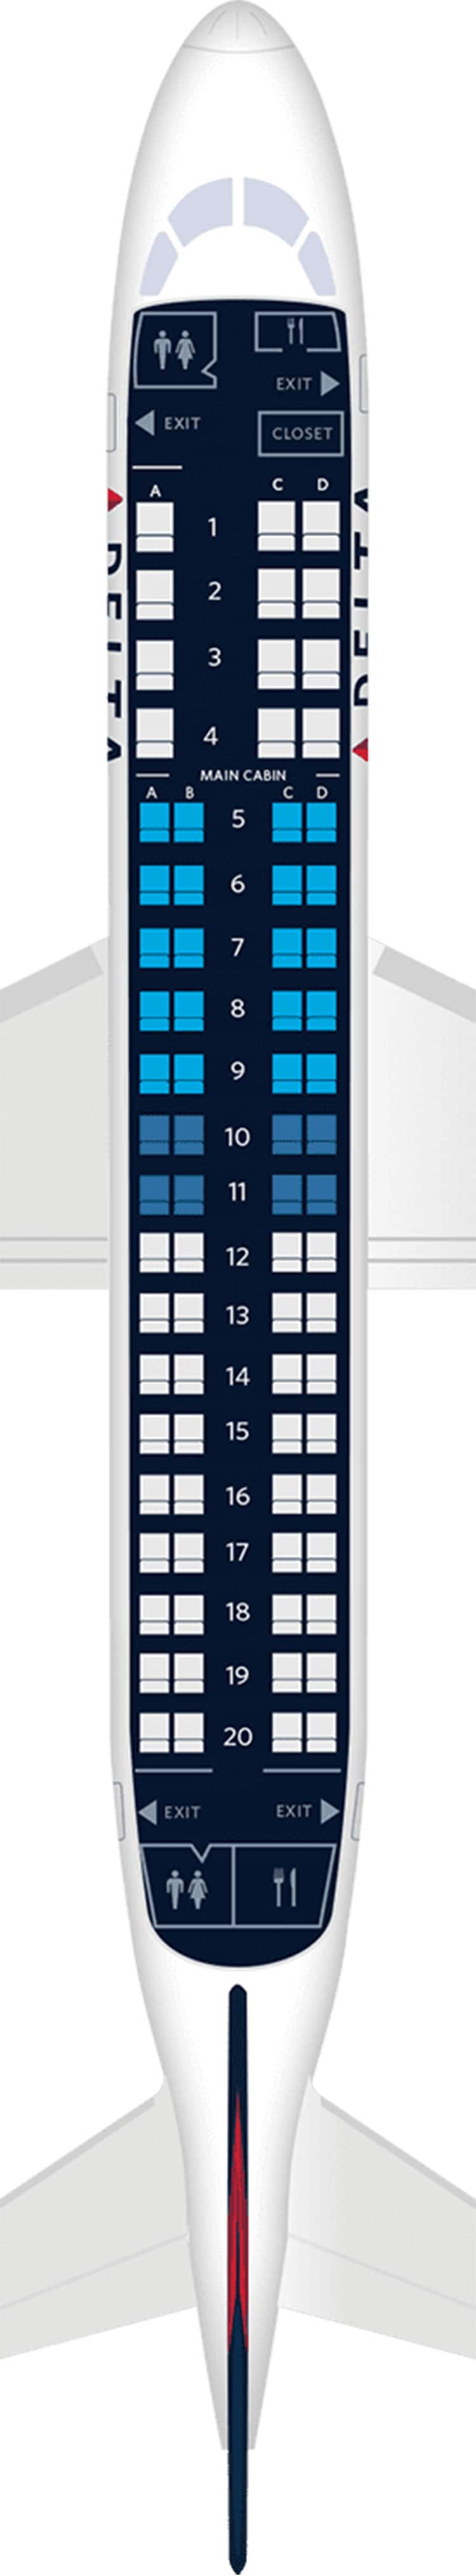 Embraer Erj 175 Aircraft Seat Maps Specs Amenities Delta Air